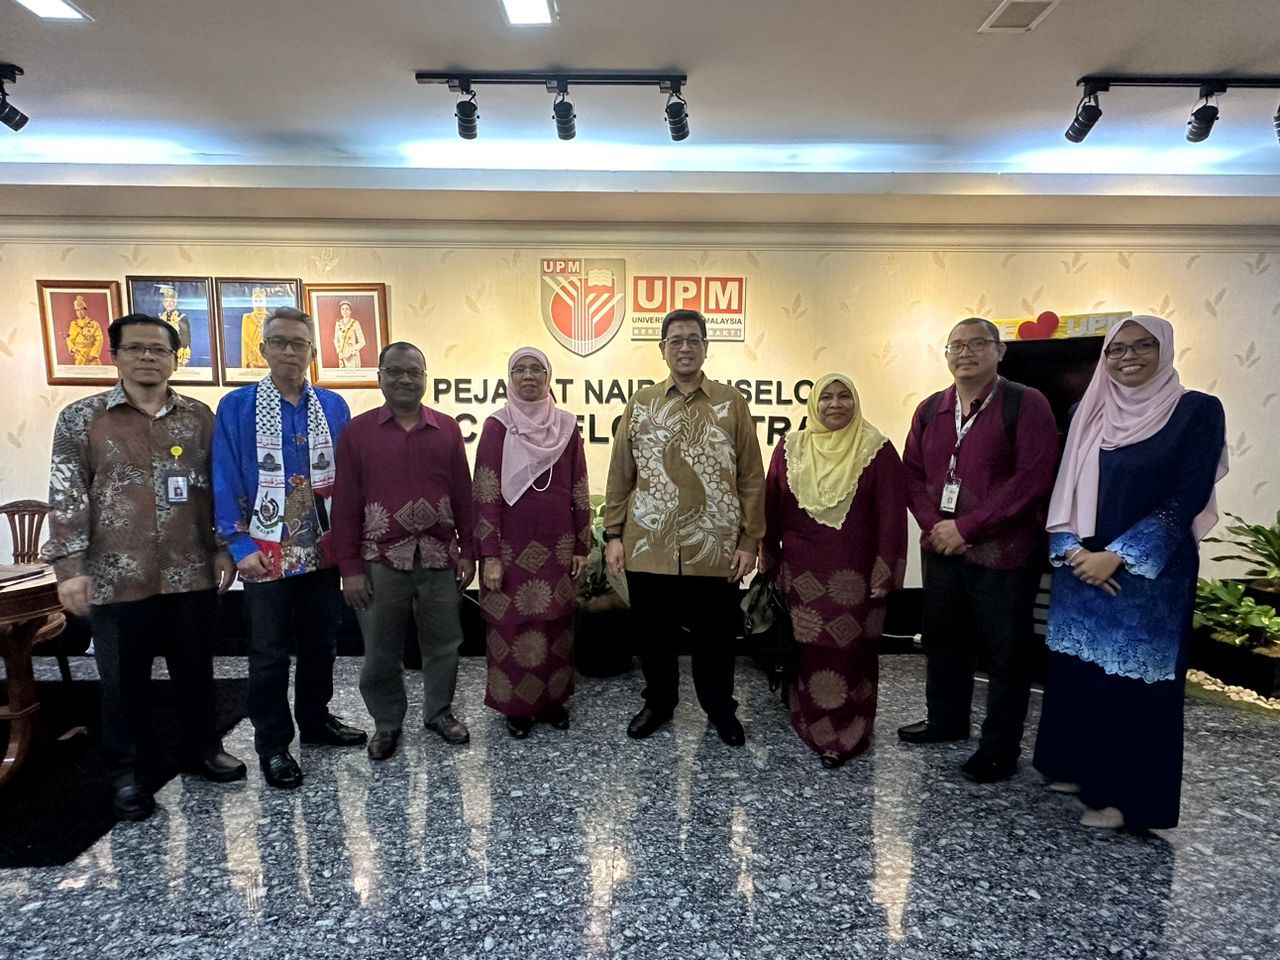 Kunjungan hormat barisan Exco kepada YBhg. Dato Naib Canselor 